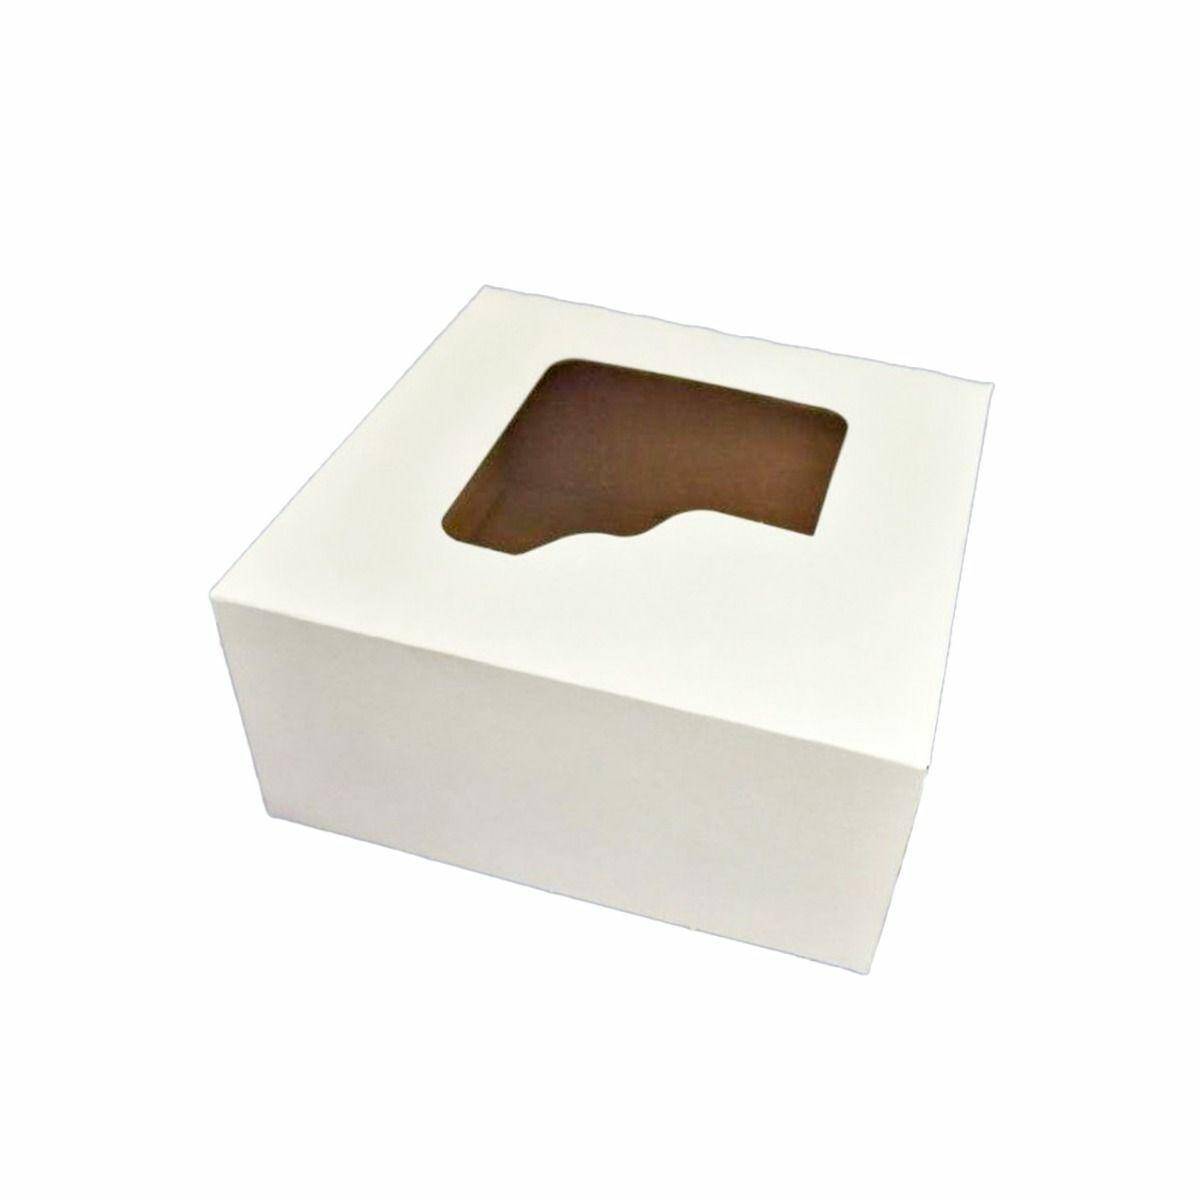 Pudełko 18x18x9 biało/brąz - OKNO (Zdjęcie 1)